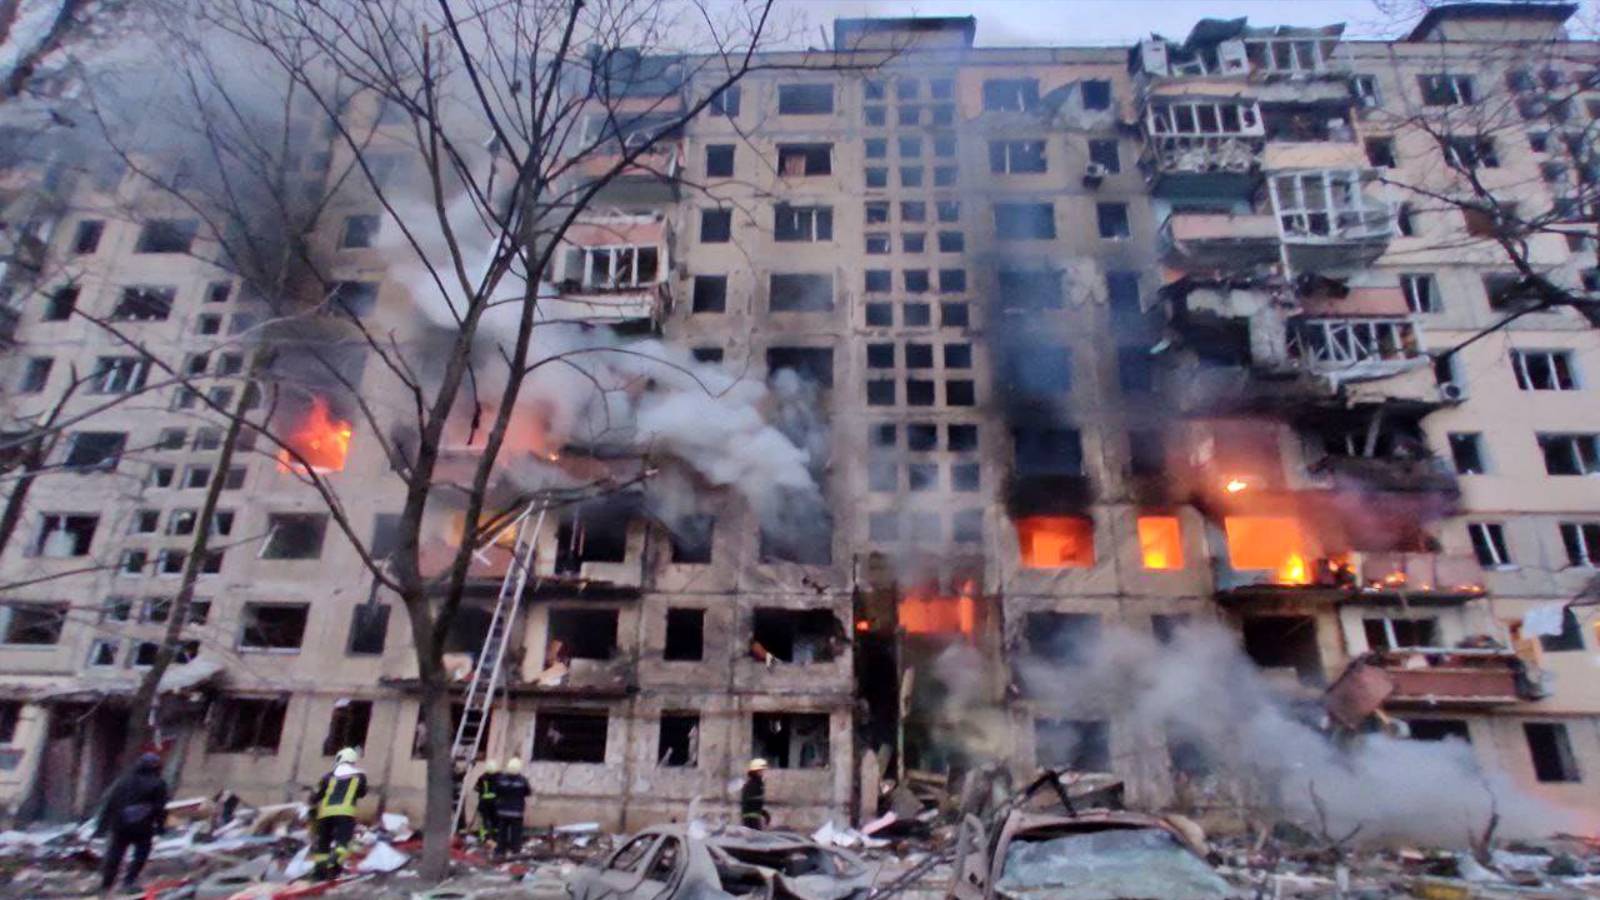 WIDEO Dramatyczne obrazy Zniszczenia bombardowań Tereny mieszkalne Ukrainy